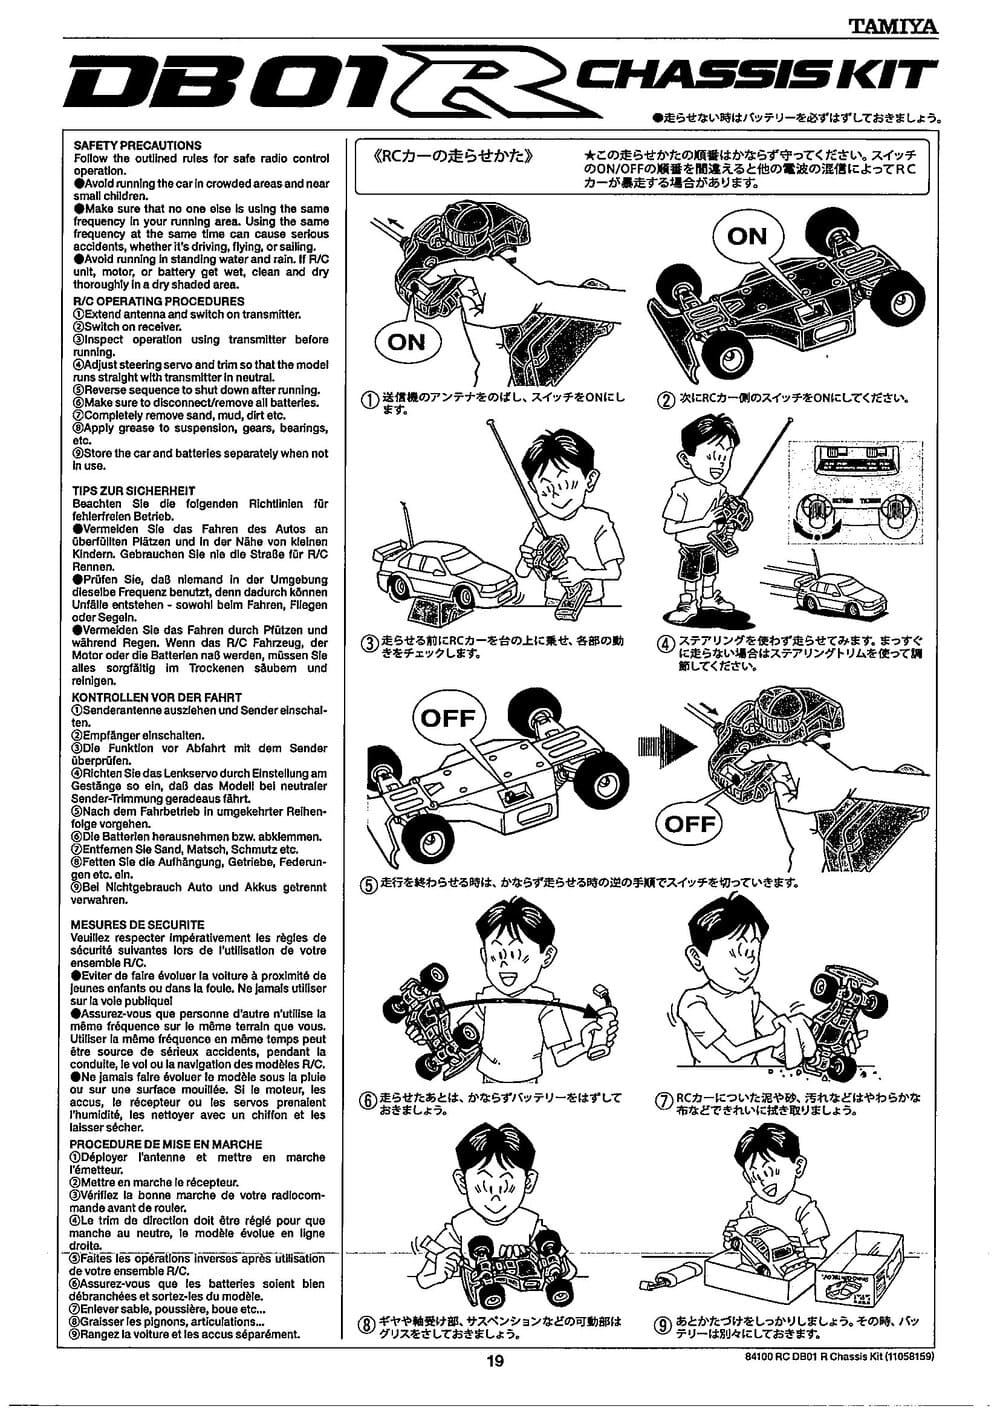 Tamiya - DB-01R Chassis - Manual - Page 19